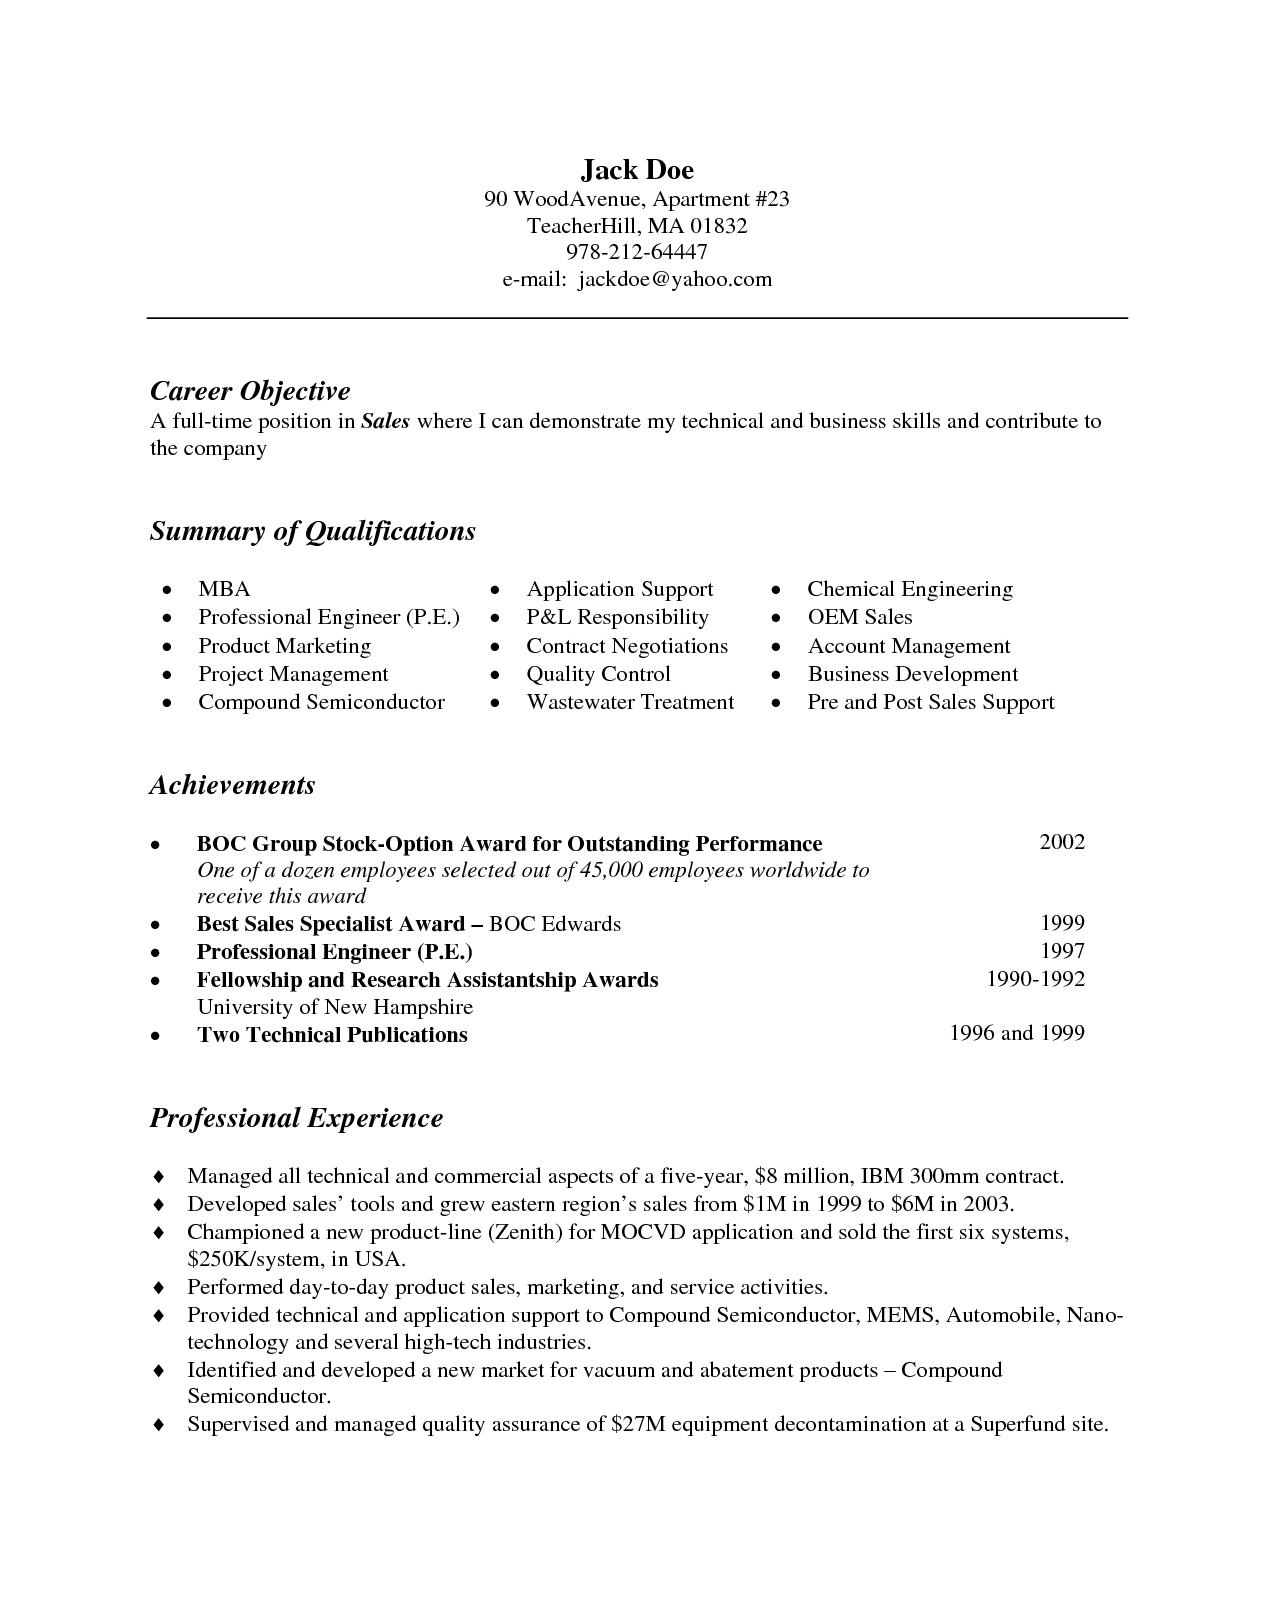 Resume Format Bullet Points 